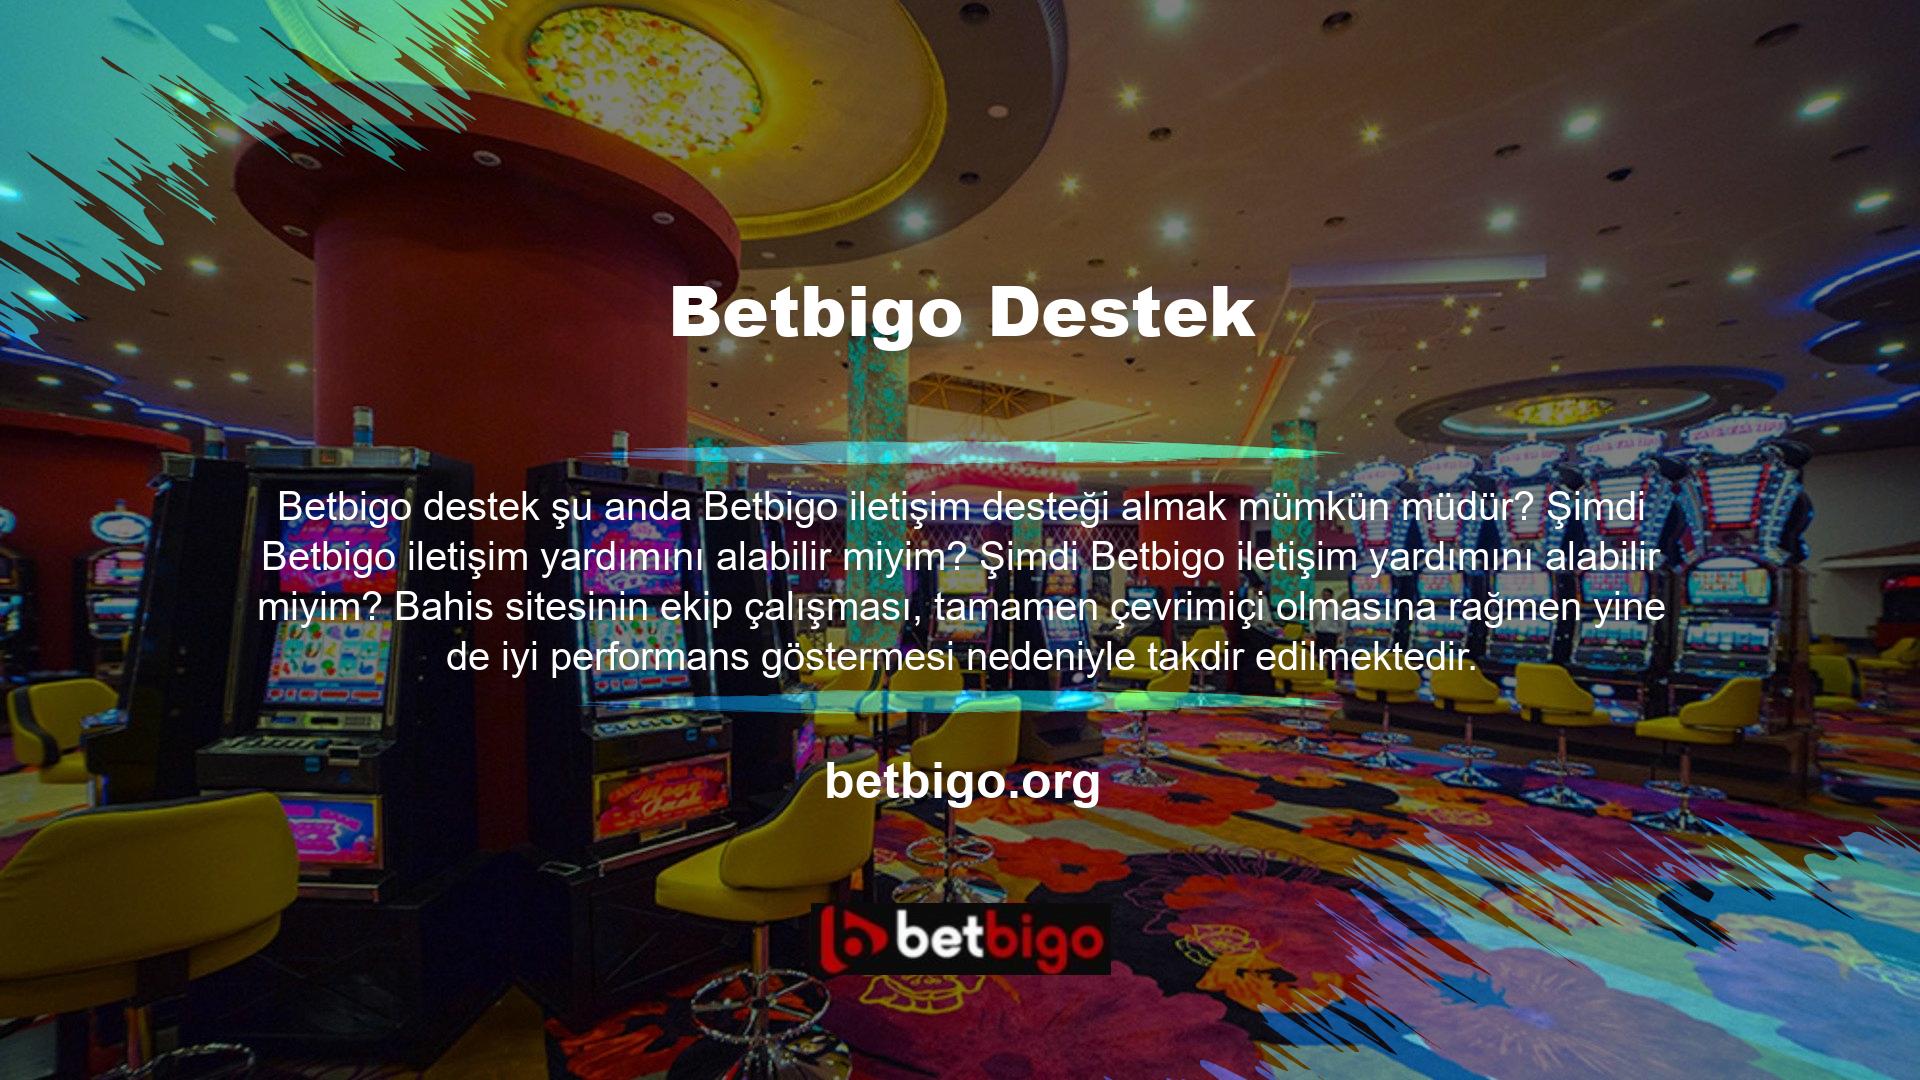 Betbigo iletişim yöntemi ve müşteri çağrı merkezinin etkinliği sayesinde hızlı yanıt mümkündür